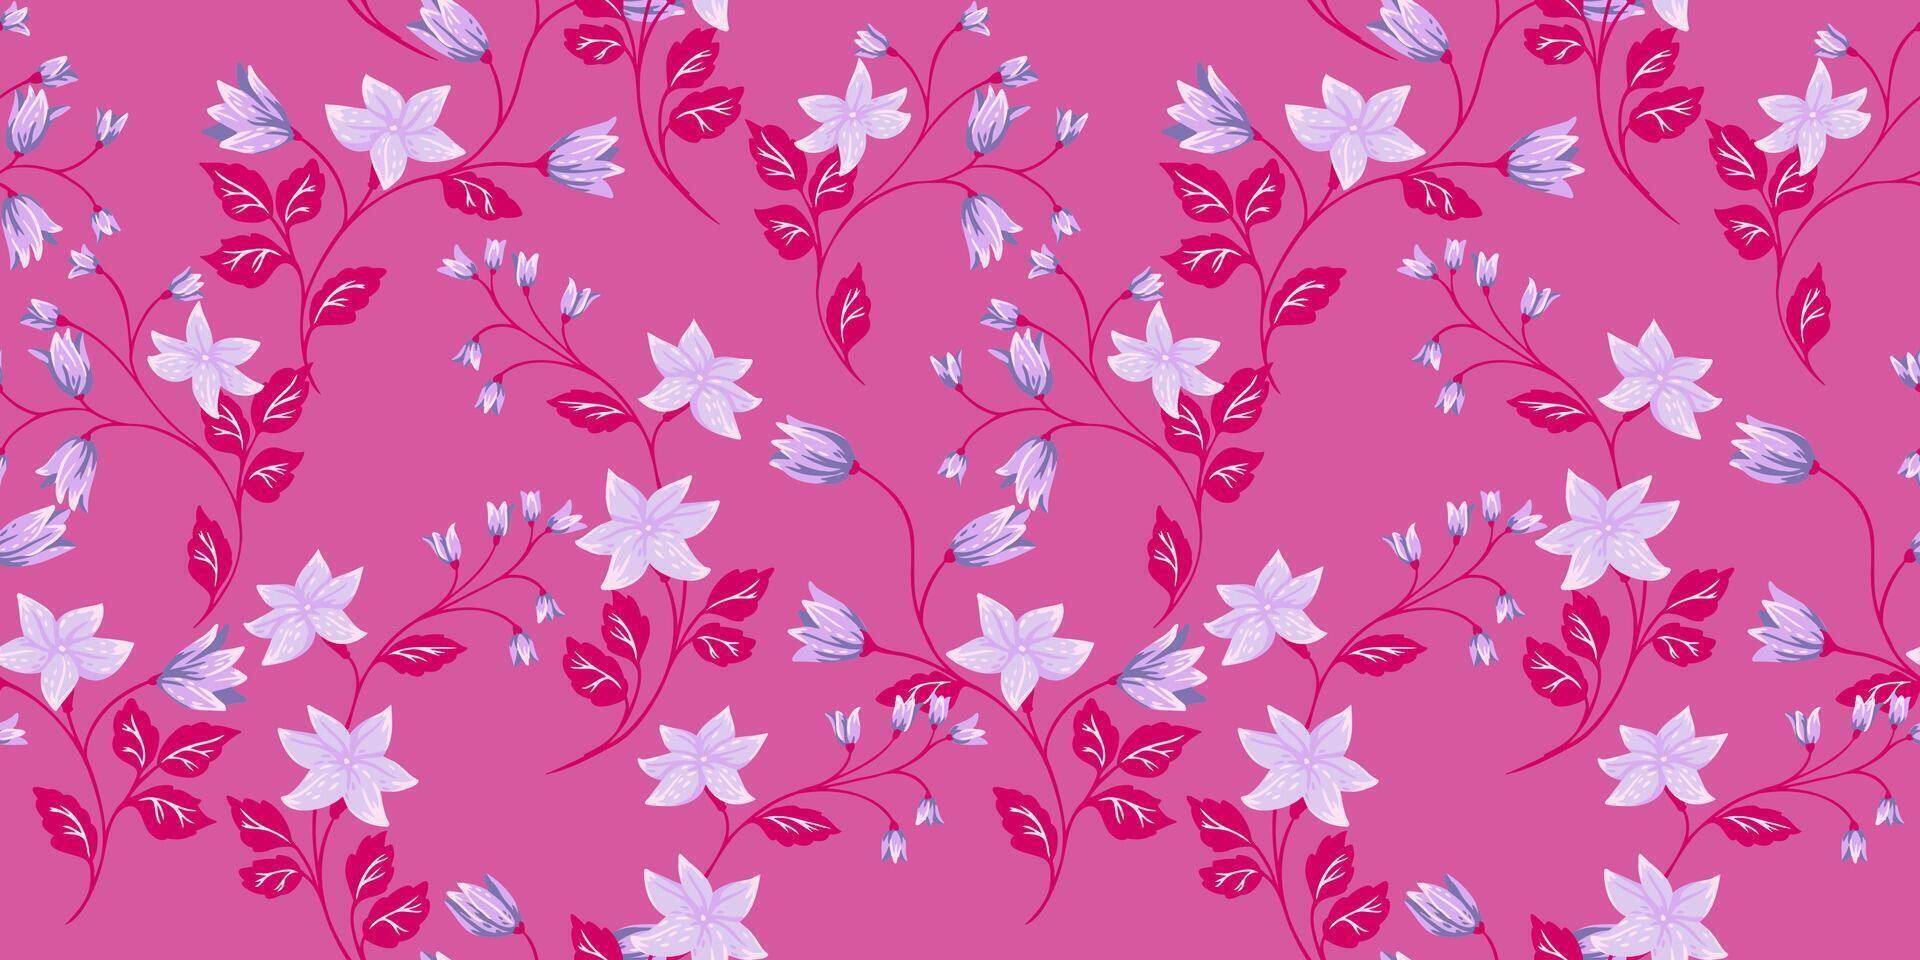 Rosa wild Blühen wild Wiese nahtlos Muster. abstrakt künstlerisch Blumen- Stängel verflochten im ein gemustert Drucken. Hand gezeichnet winzig Blumen Glocken, klein Blätter, Knospen. Vorlage zum Designs vektor